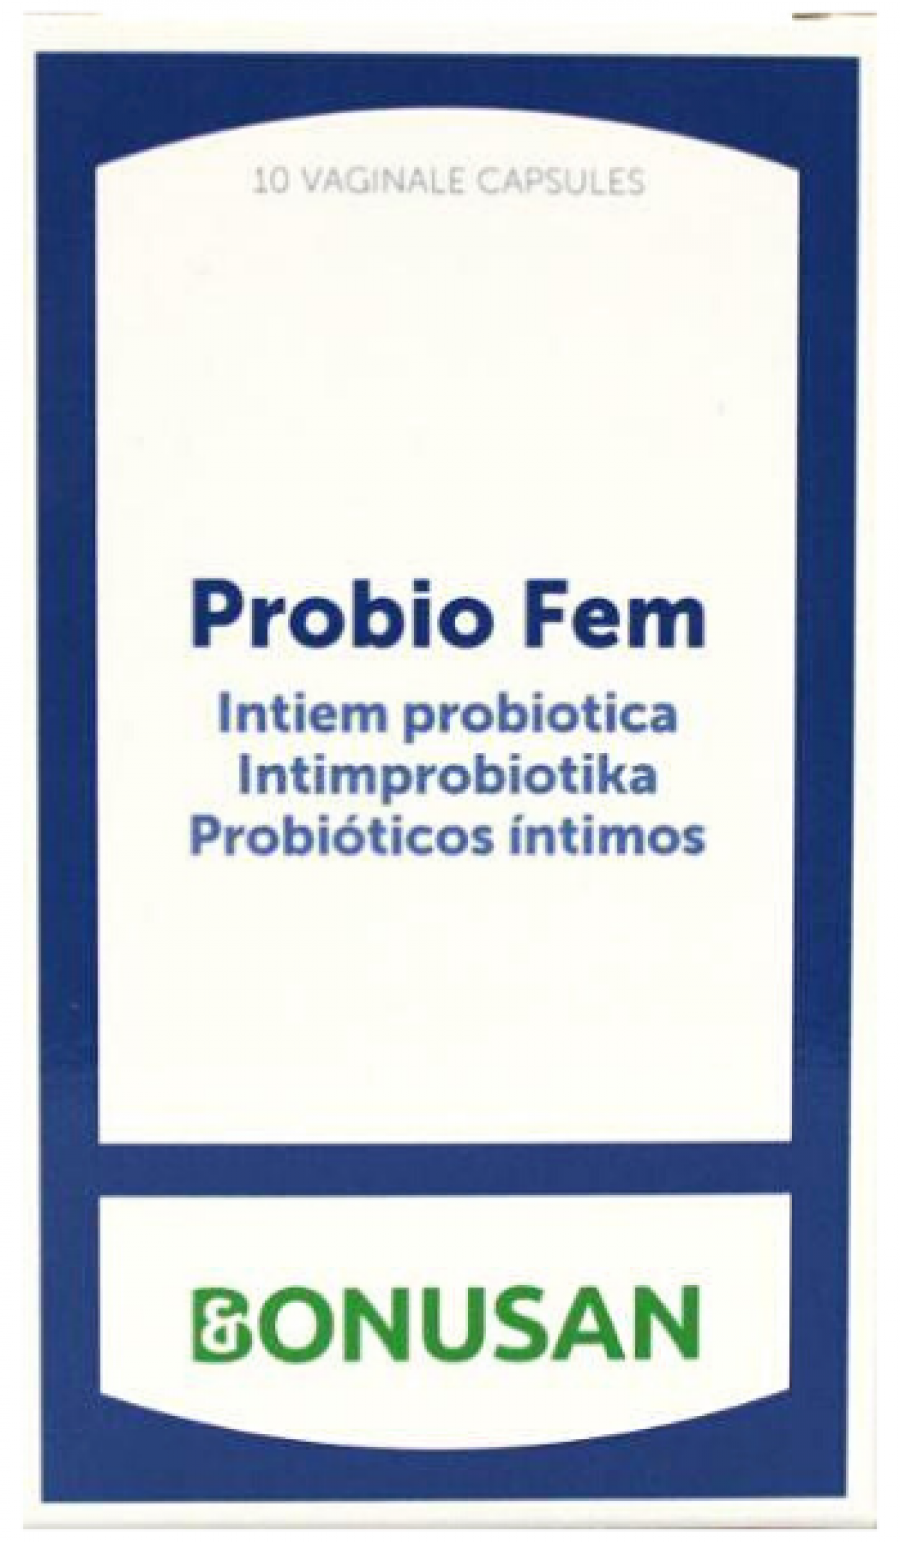 ProbioFem3